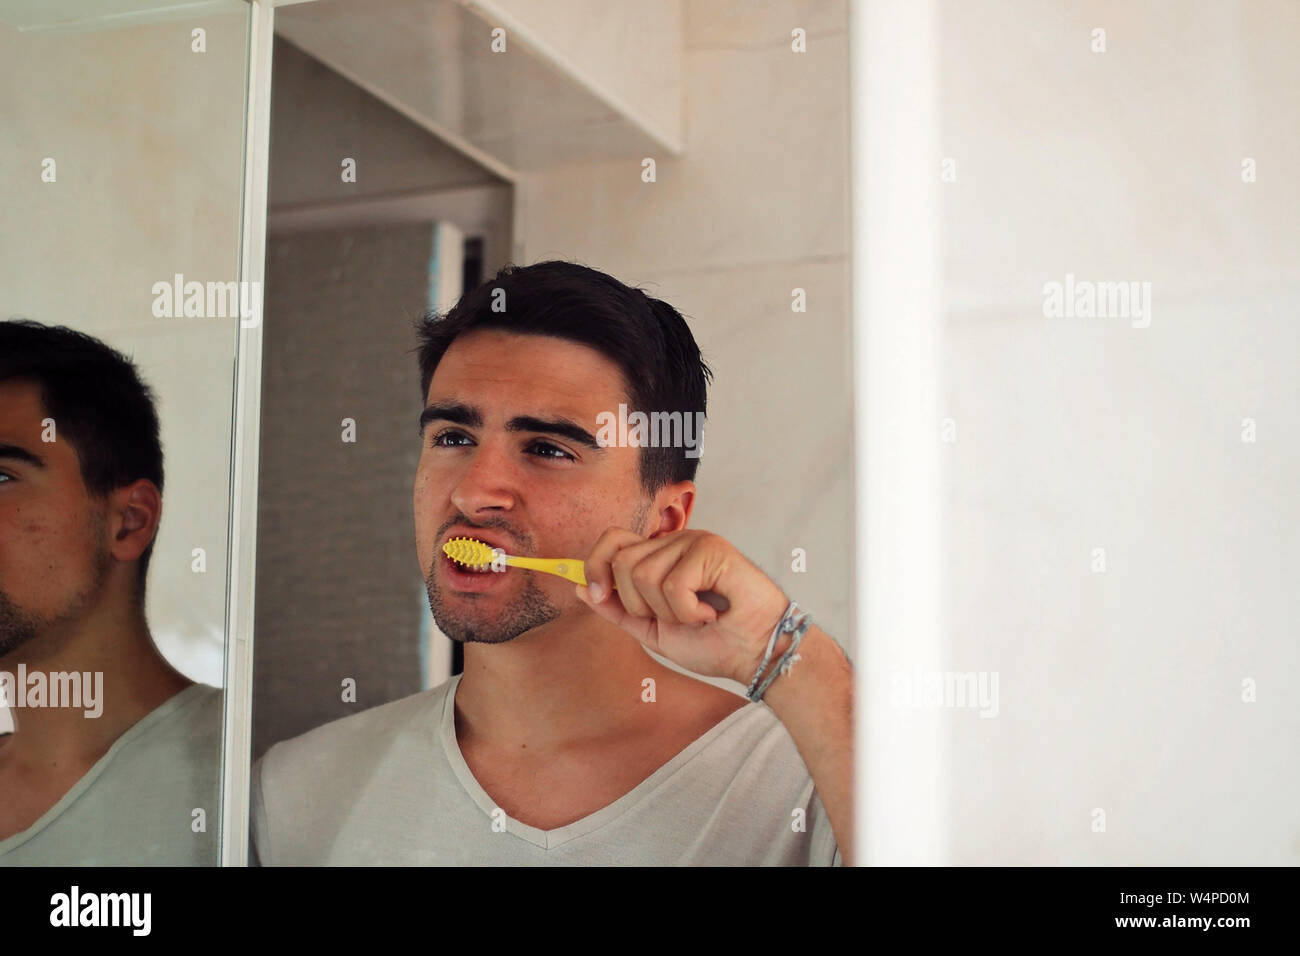 Mann Gekleidet in weiße seine Zähne putzen. Stockfoto